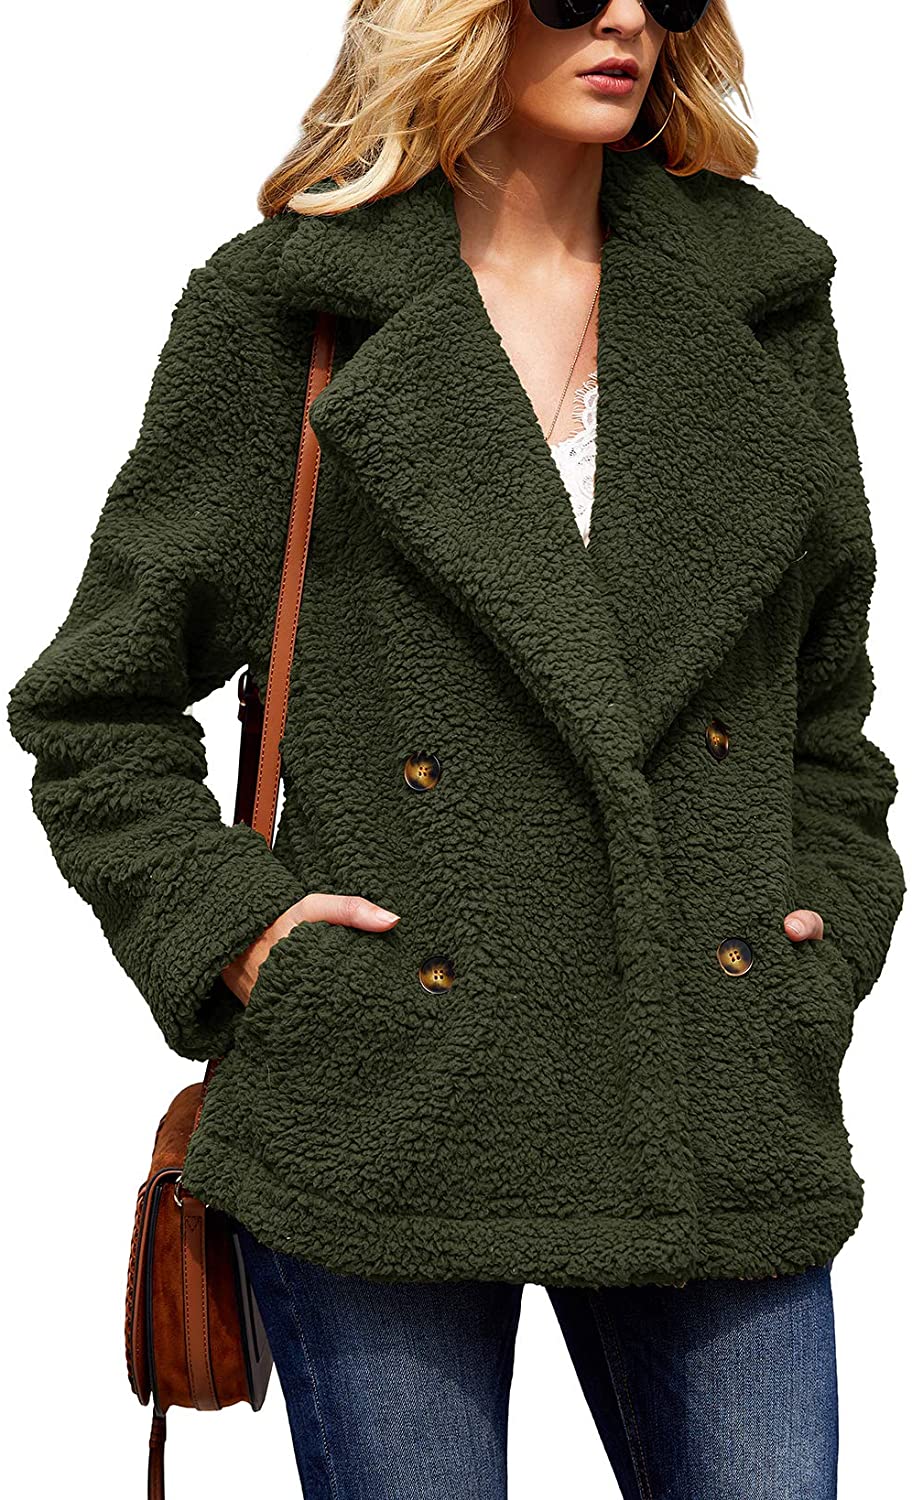 Ofenbuy Womens Sherpa Jackets Fuzzy Fleece Open Front Lapel Cardigan Winter Coat Outwear with Pockets